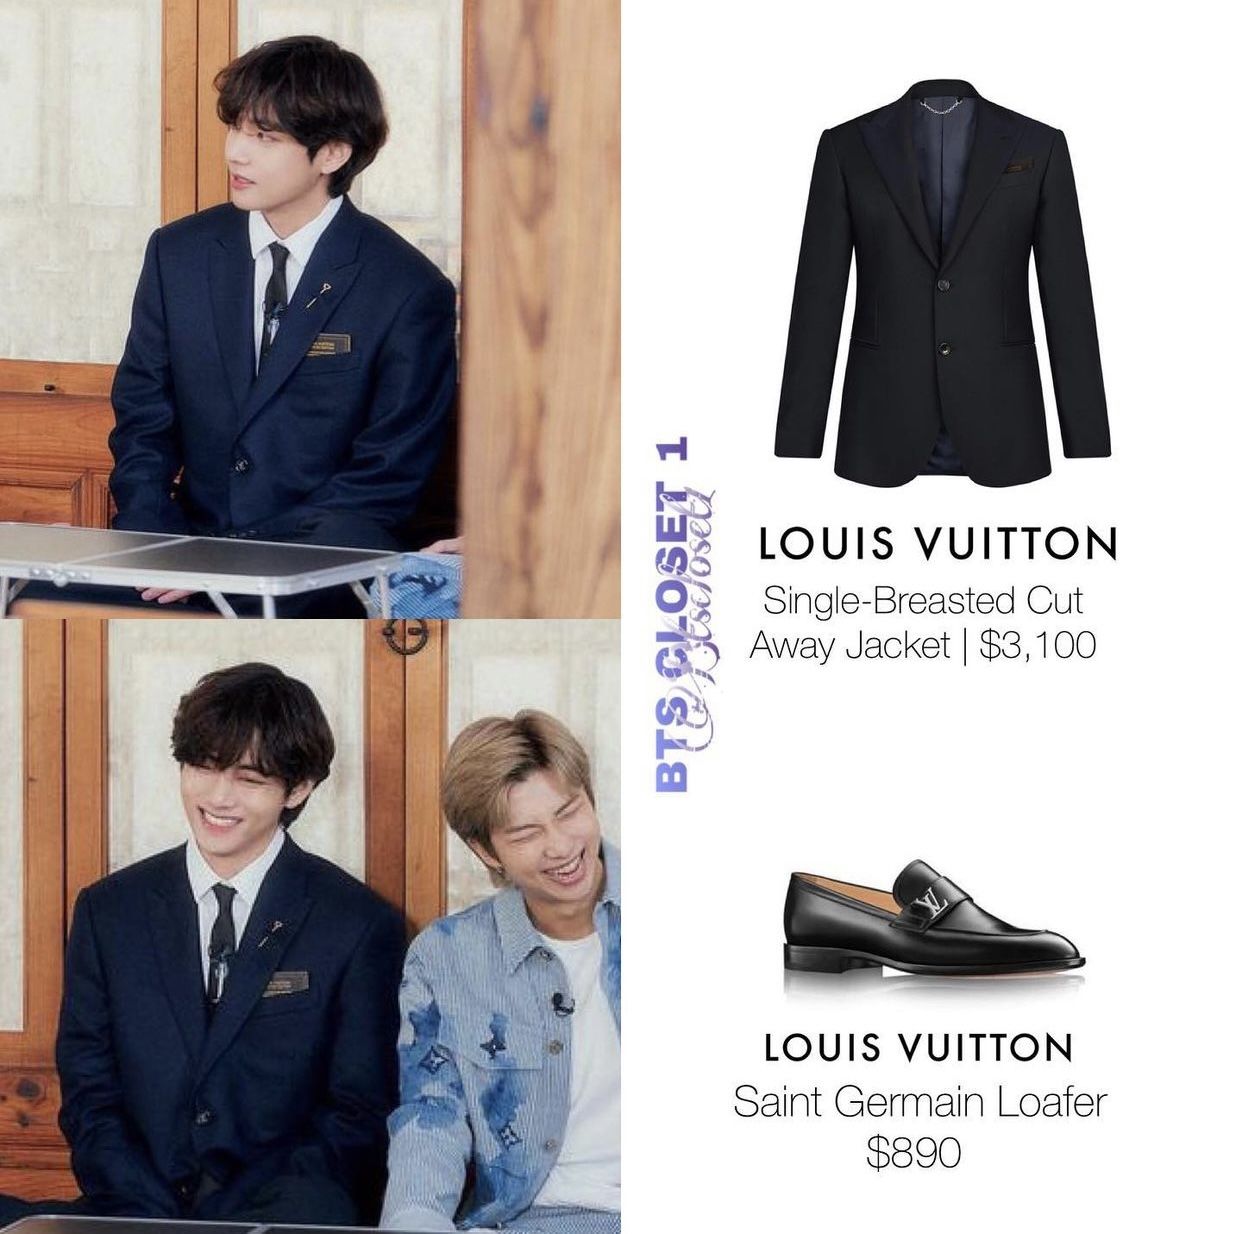 Louis Vuitton Bts Photos Iqs Executive